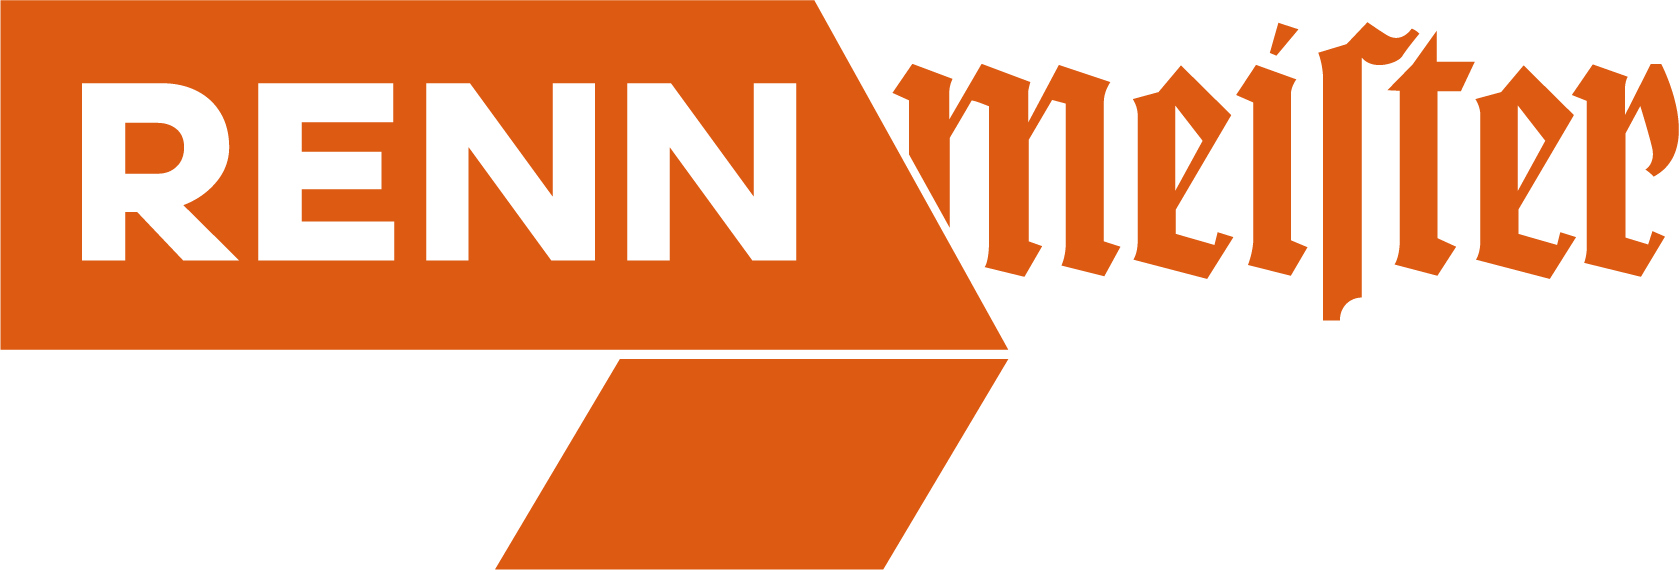 Logo Rennmeister